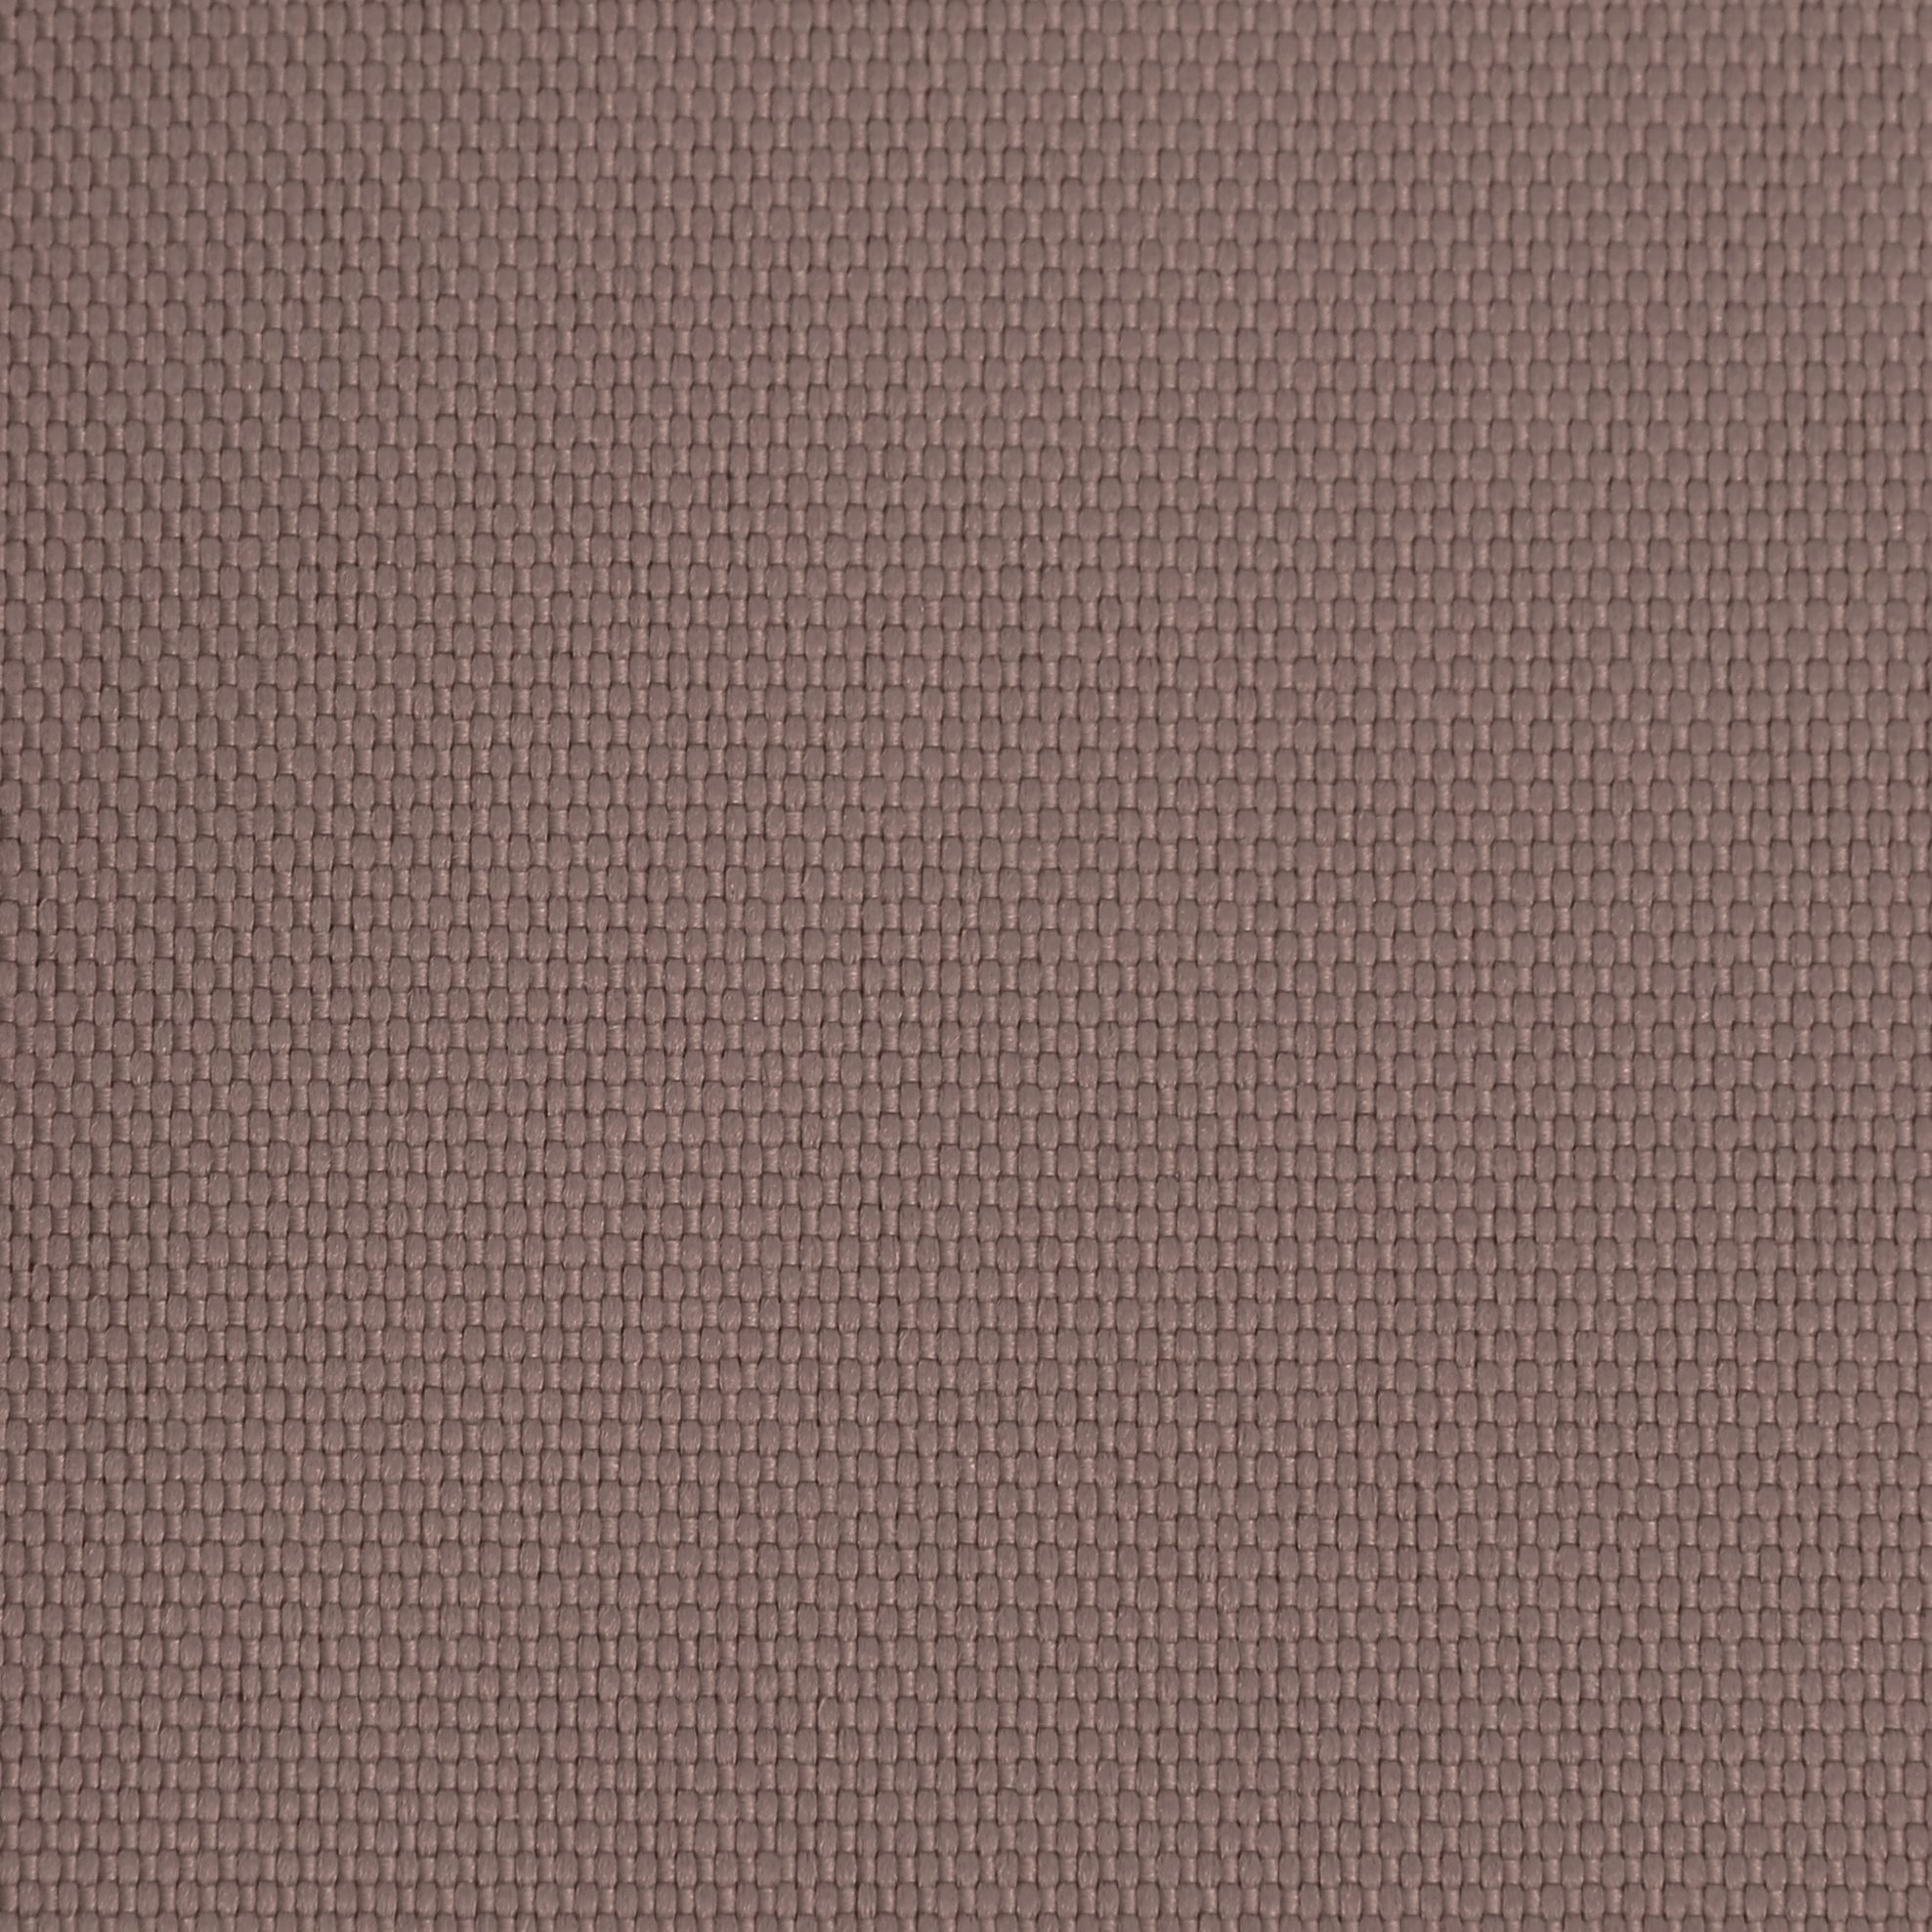 Ткань Оксфорд 600D размер 5м*1,5м арт. 600500670 цвет коричневый